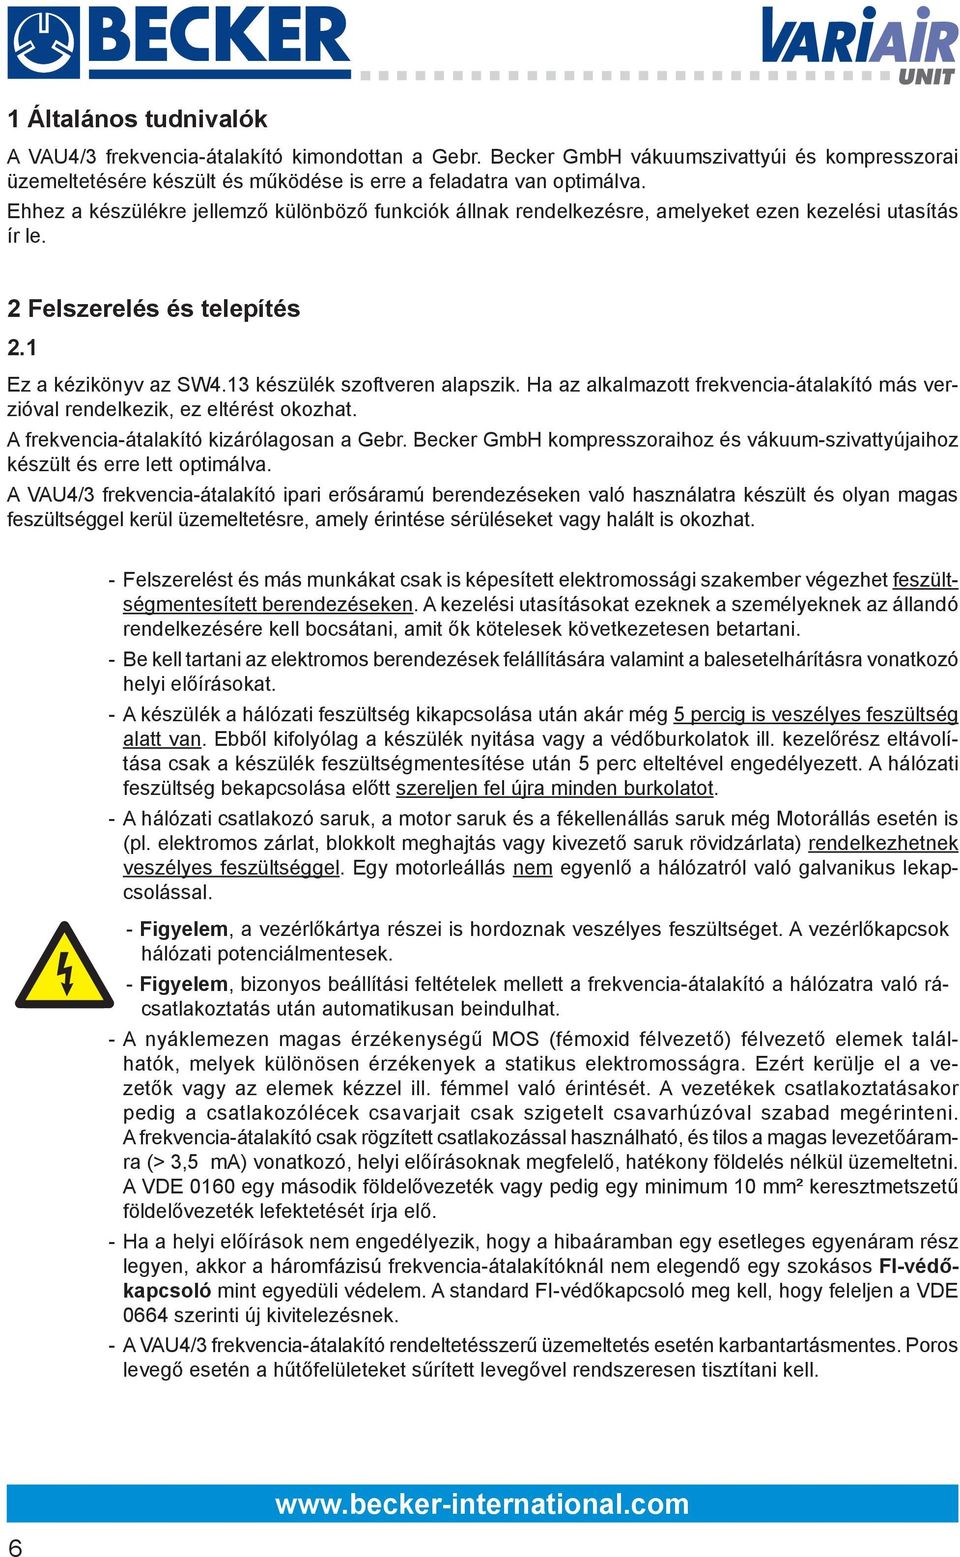 Frekvencia-átalakító VAU4/3 - PDF Ingyenes letöltés